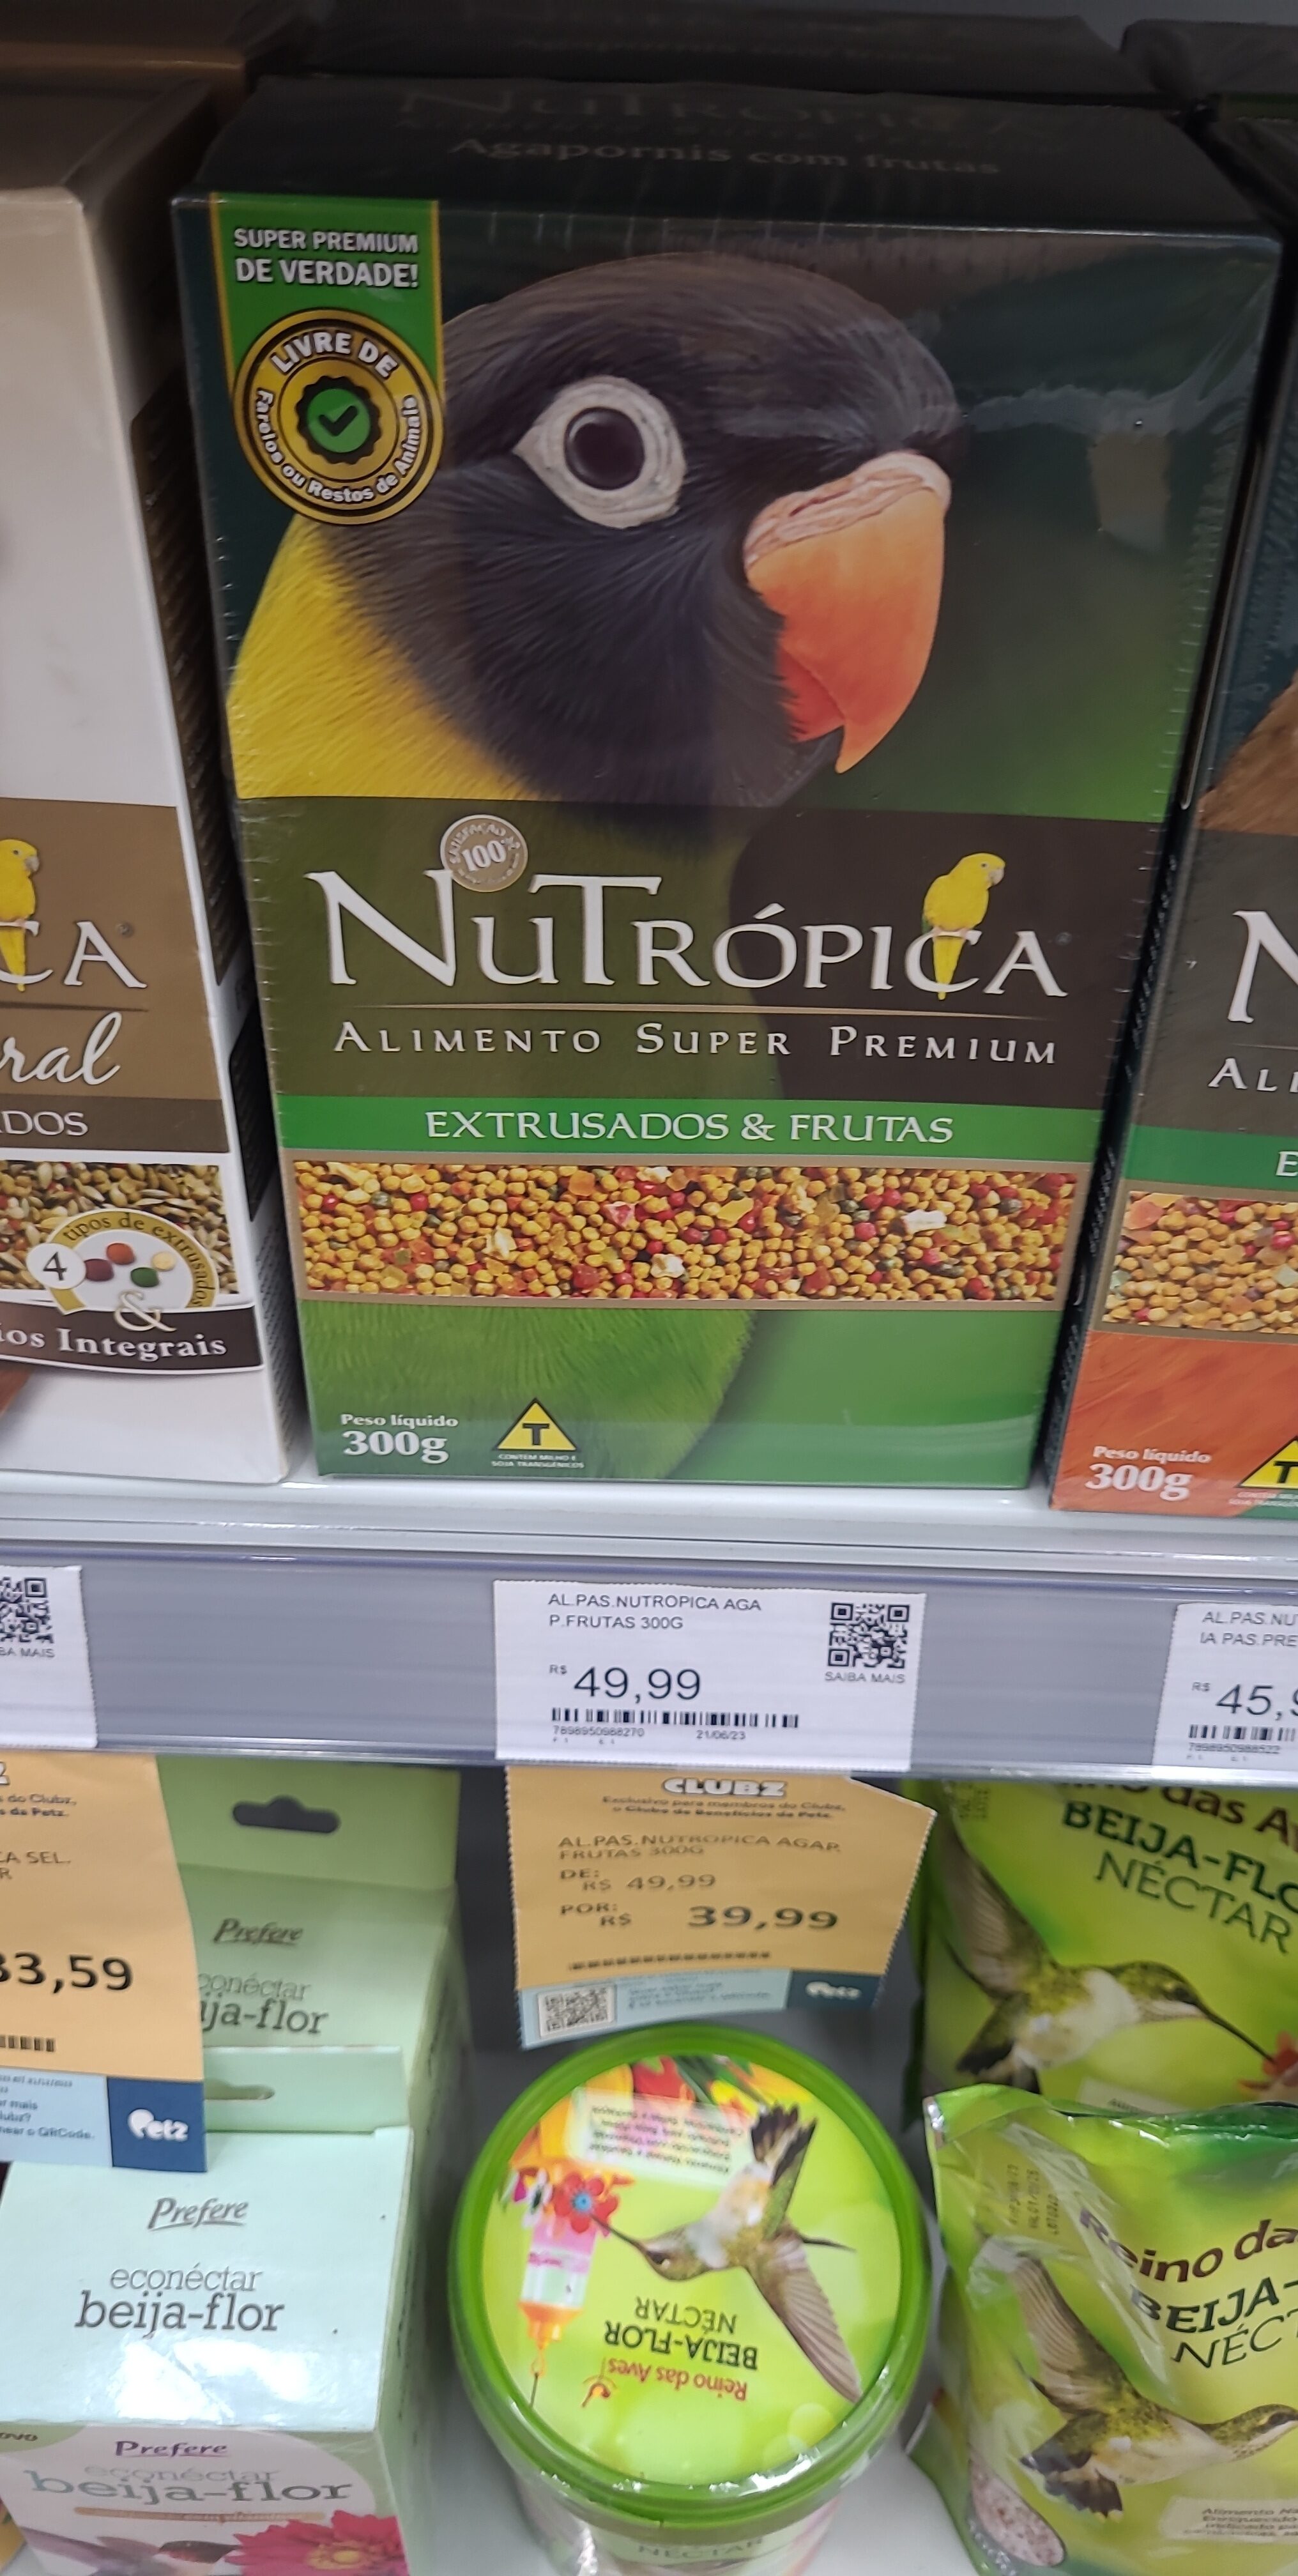 Nutropica agapornis com frutas 300g - Product - pt